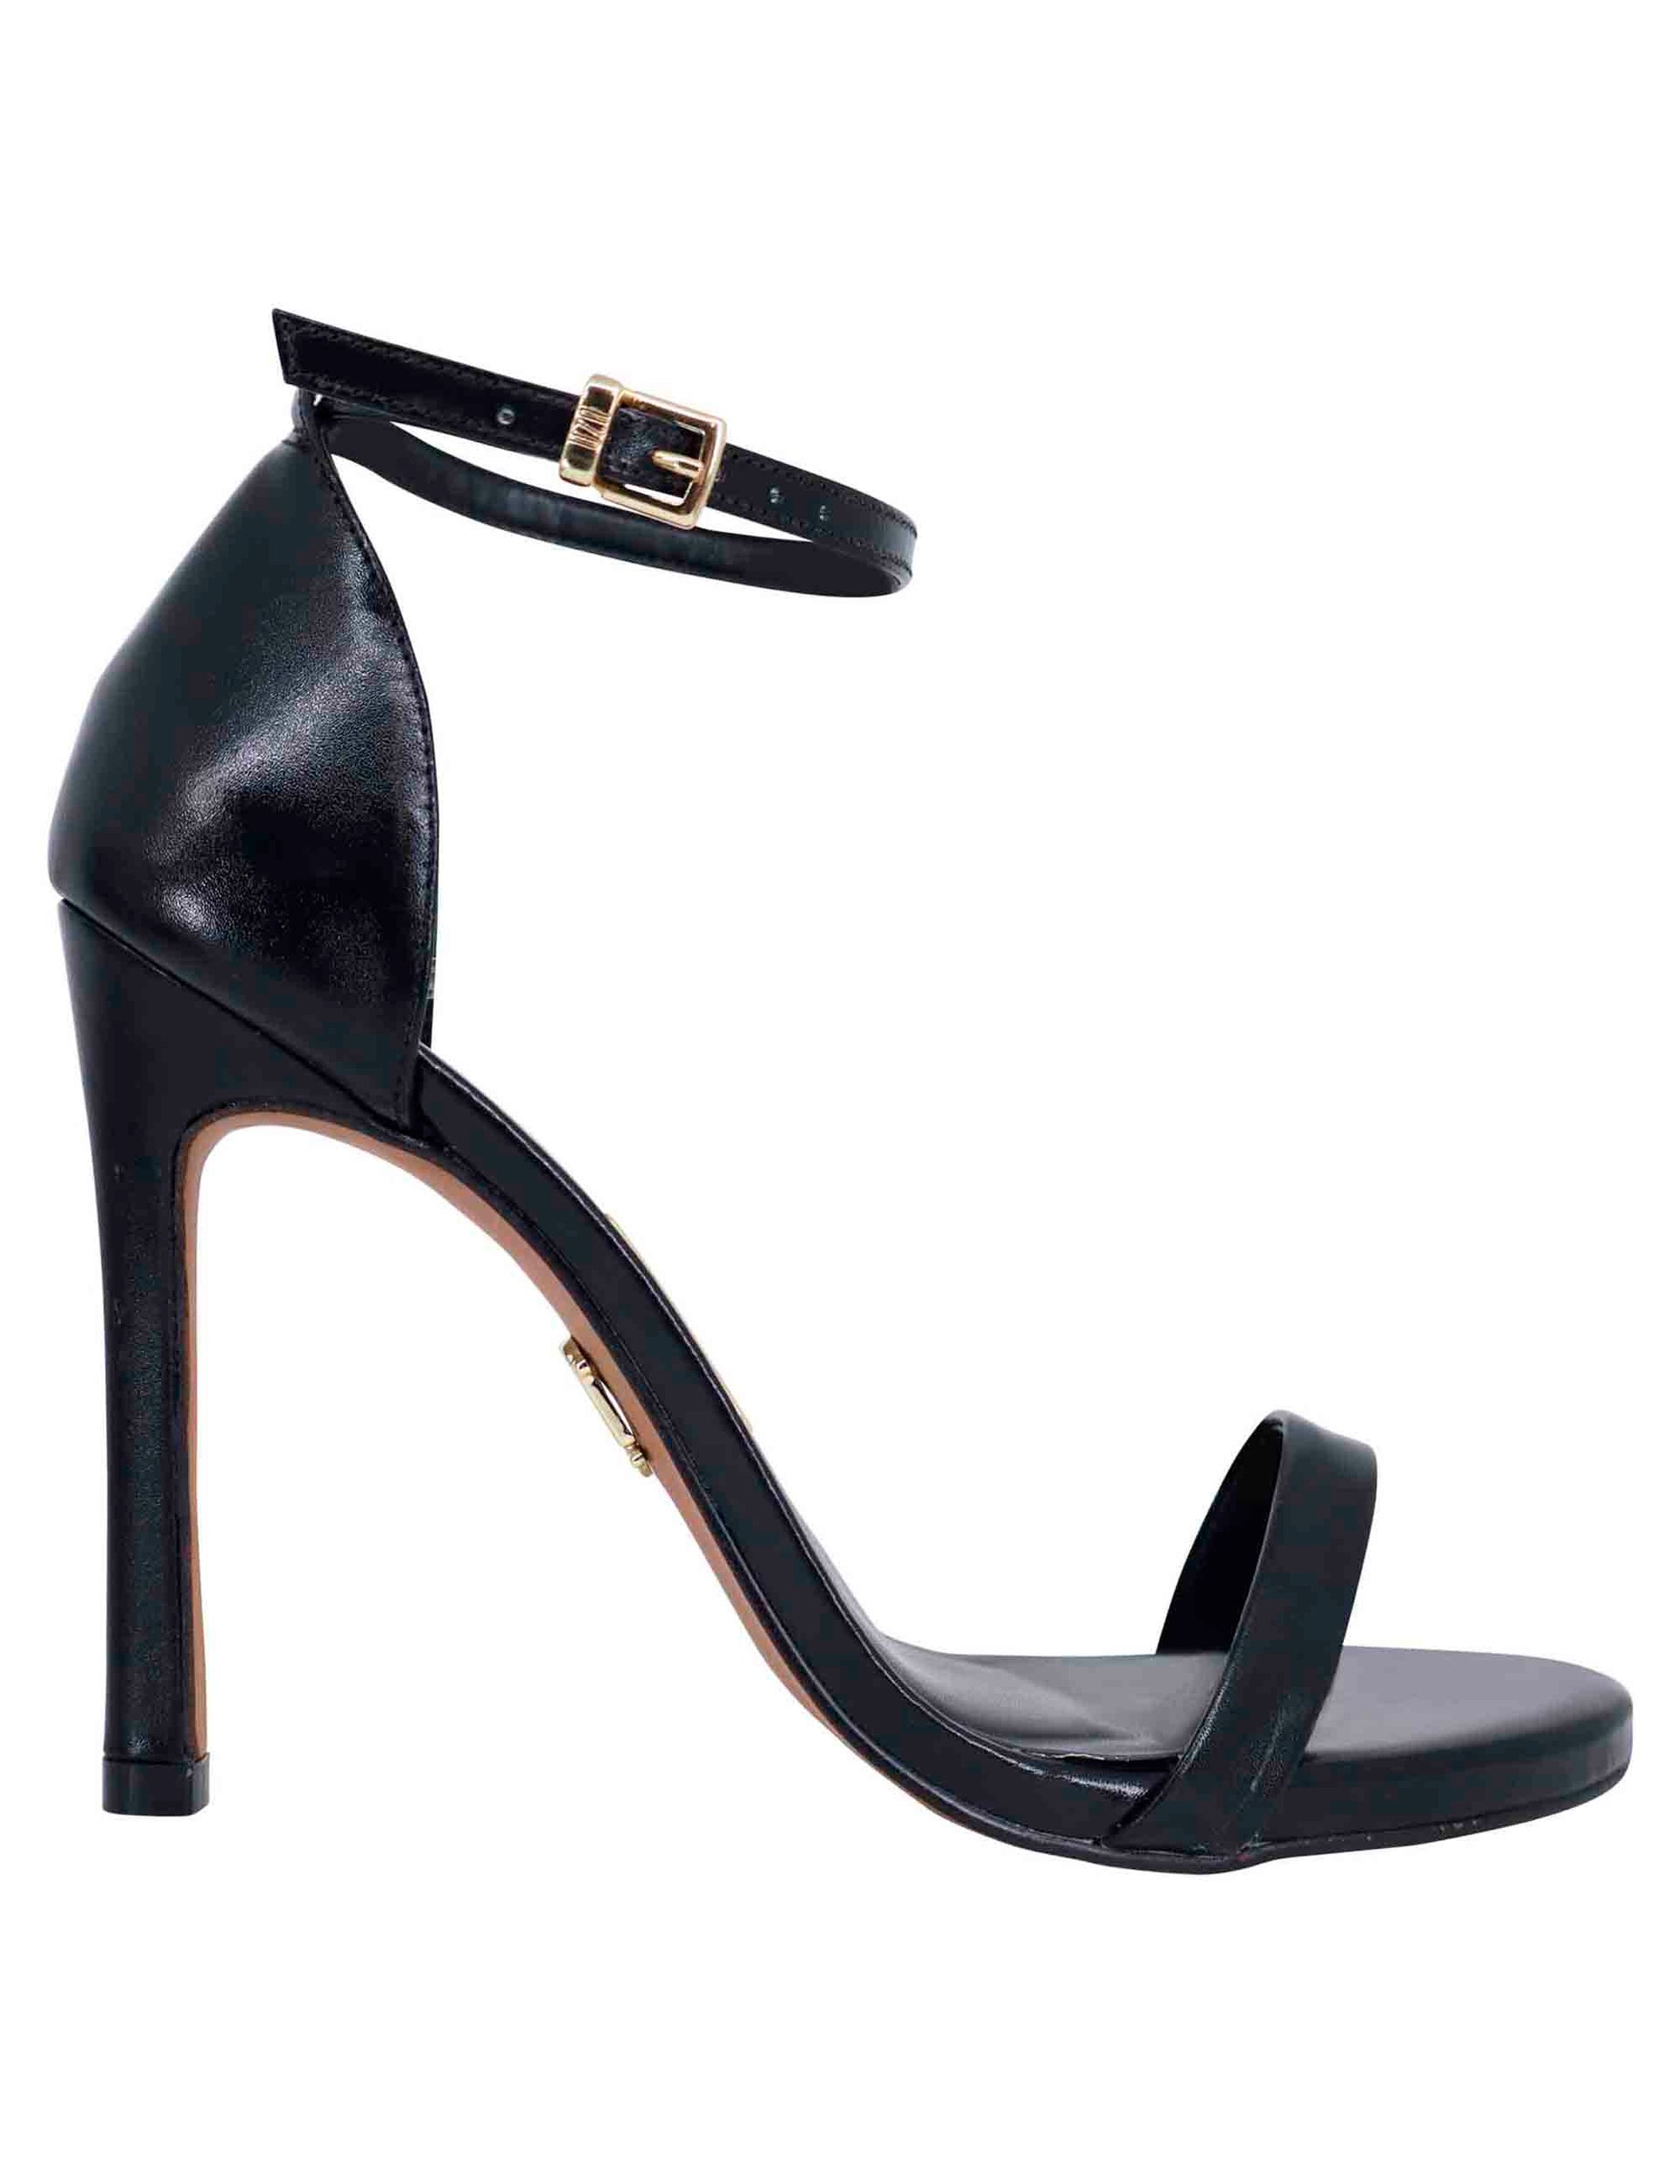 Sandali donna in pelle nera tacco alto e cinturino alla caviglia